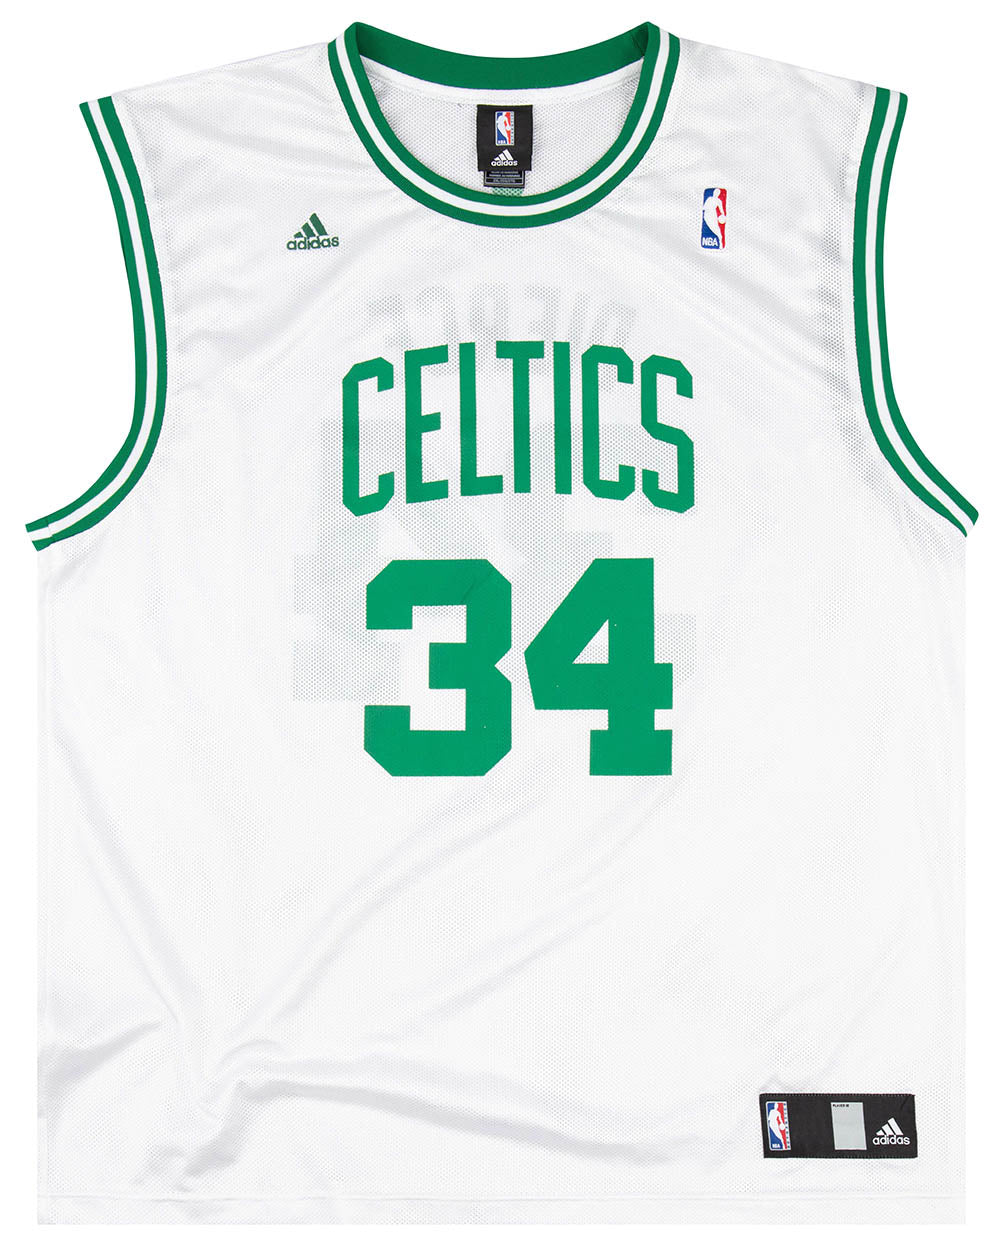 Reebok NBA Boston Celtics Paul Pierce #34 Stitched Jersey SIZE M LENGTH+2